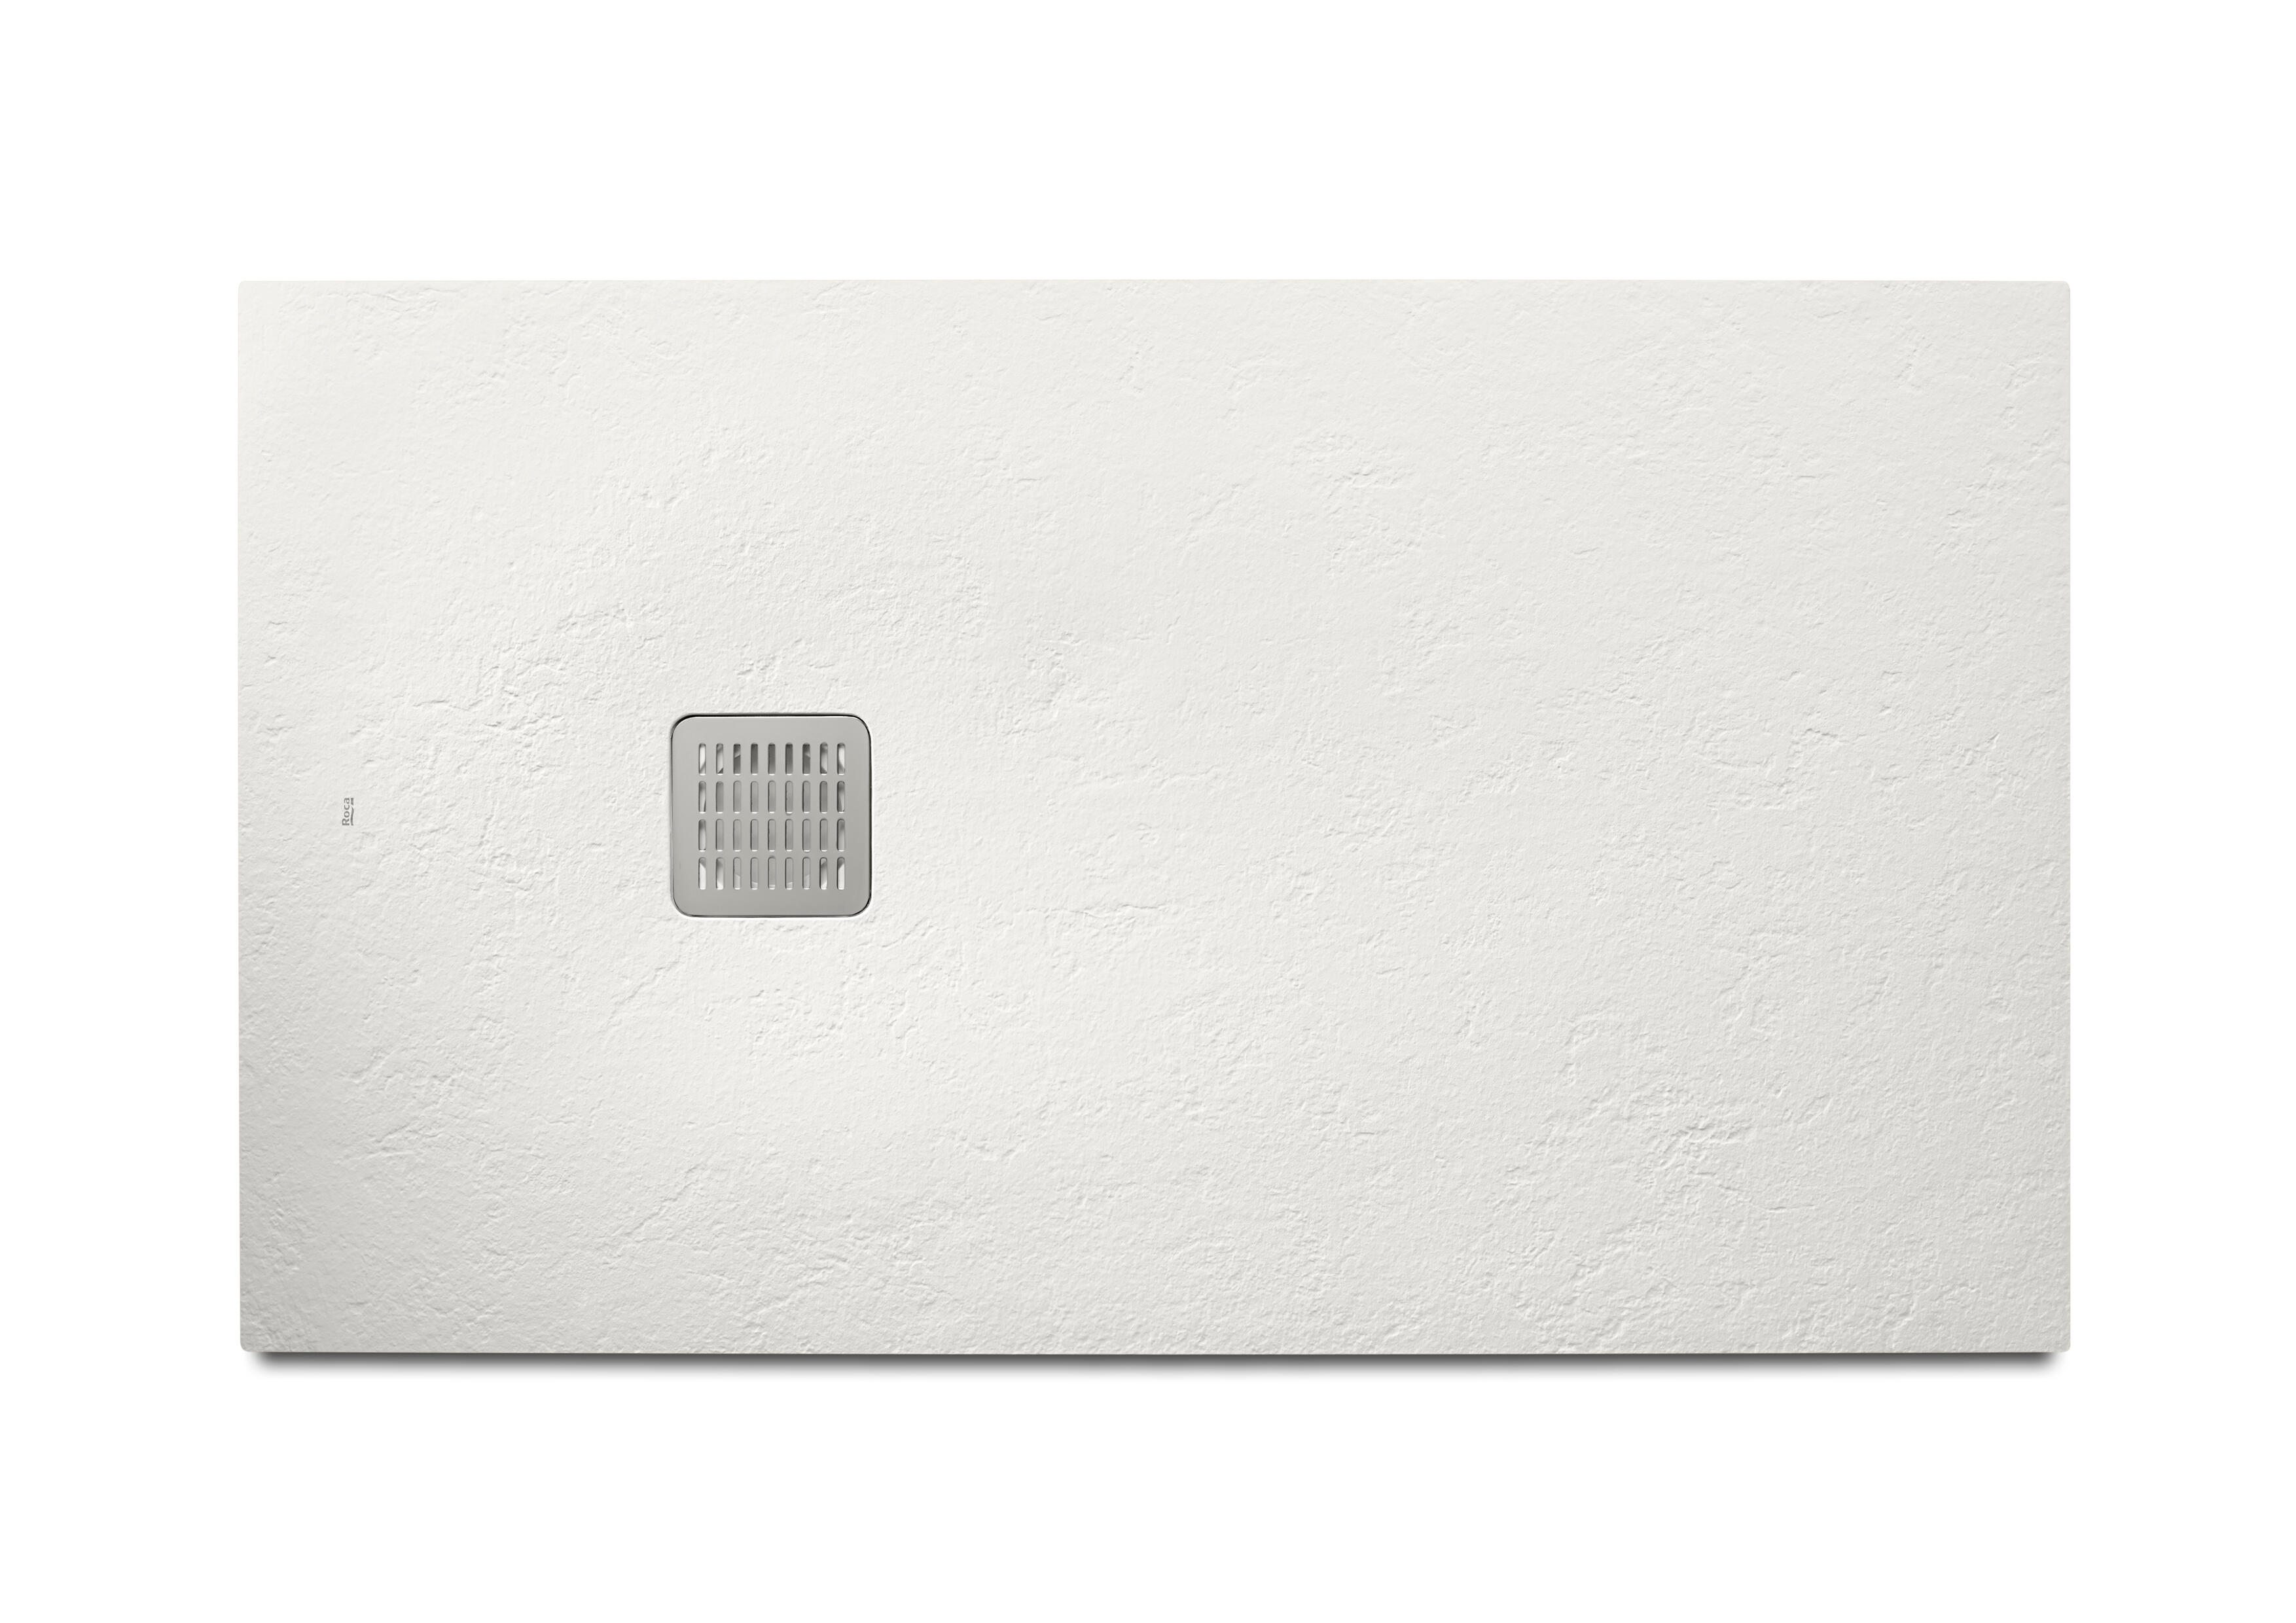 Plato de ducha legacy 180x70 cm blanco